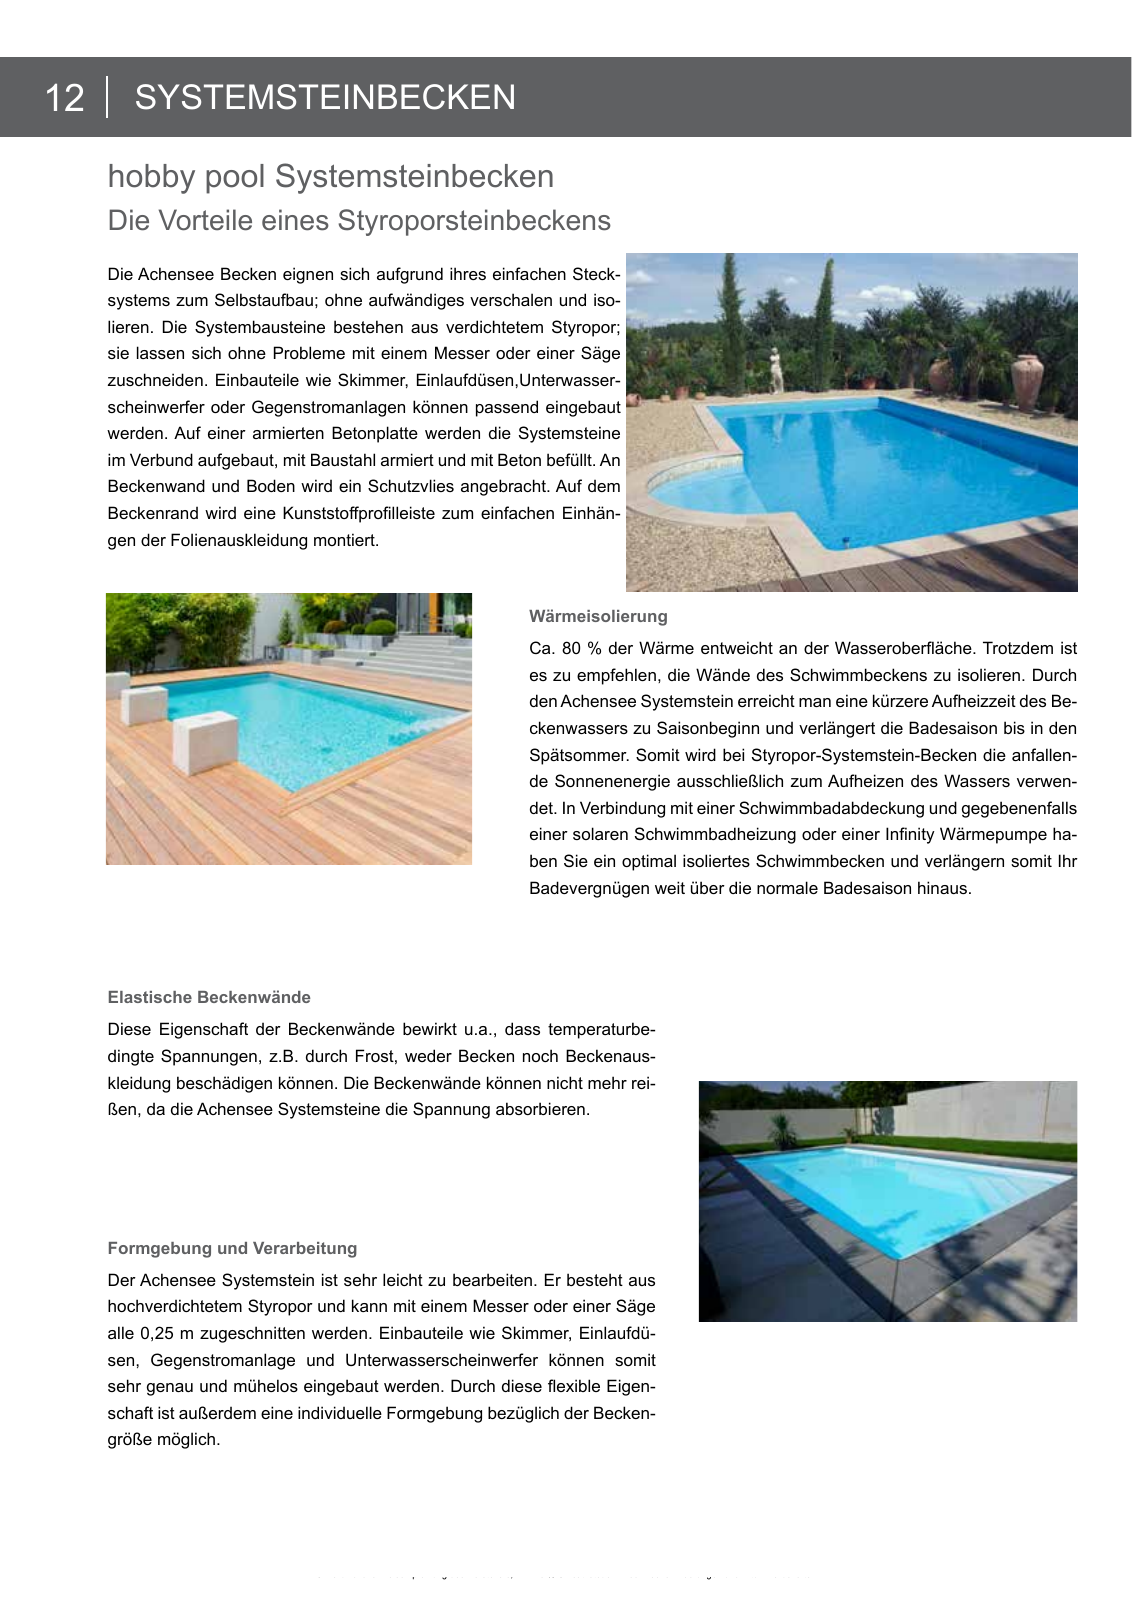 Vorschau arcana Schwimmbadkatalog 2016 Seite 12